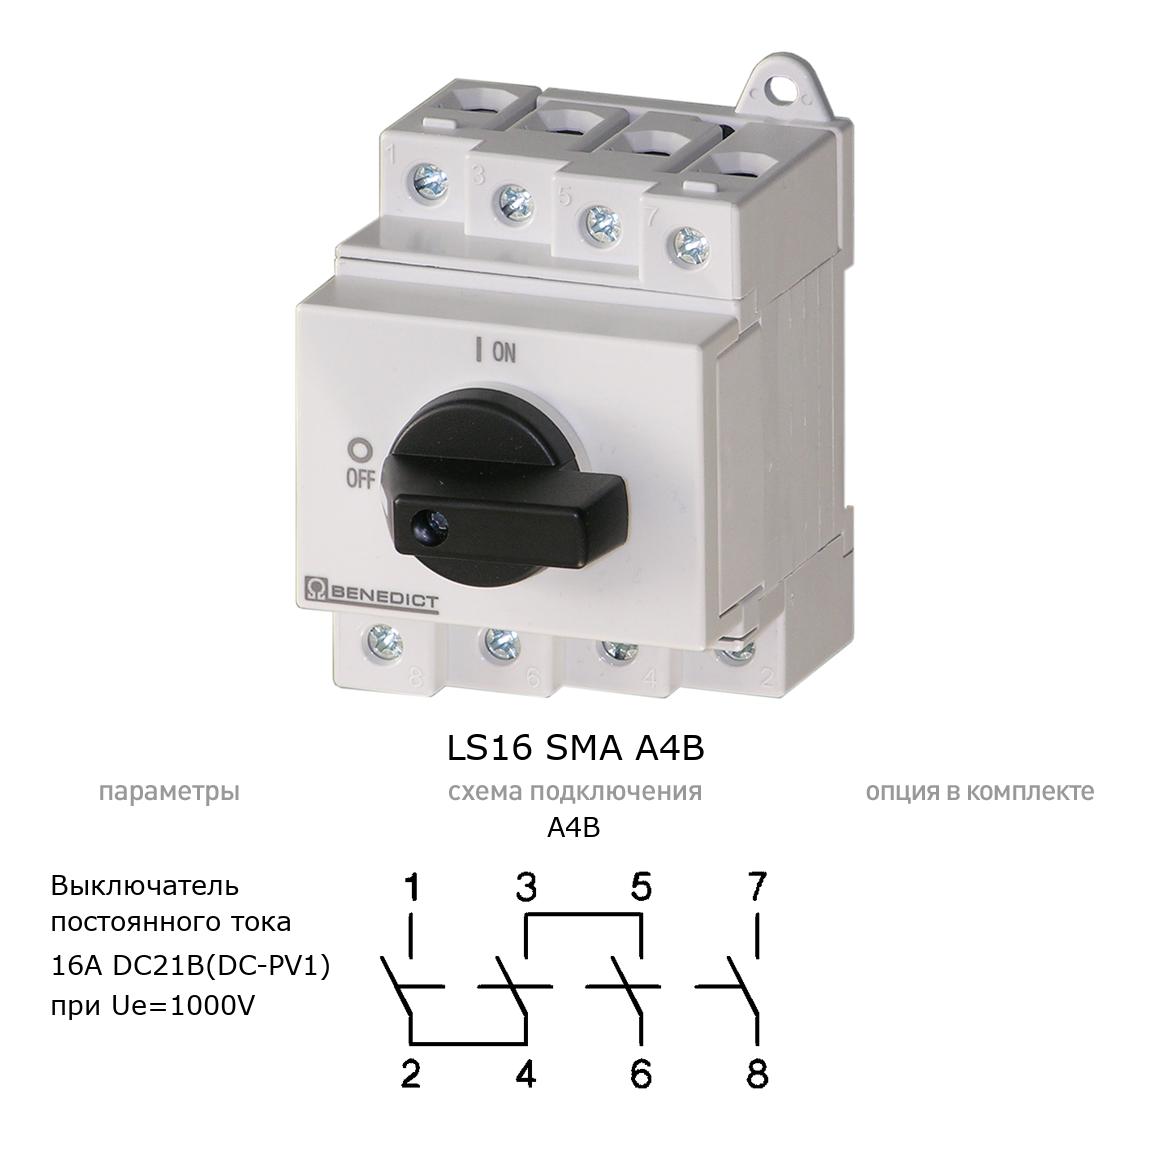 Кулачковый переключатель для постоянного тока (DC) LS16 SMA A4B BENEDICT